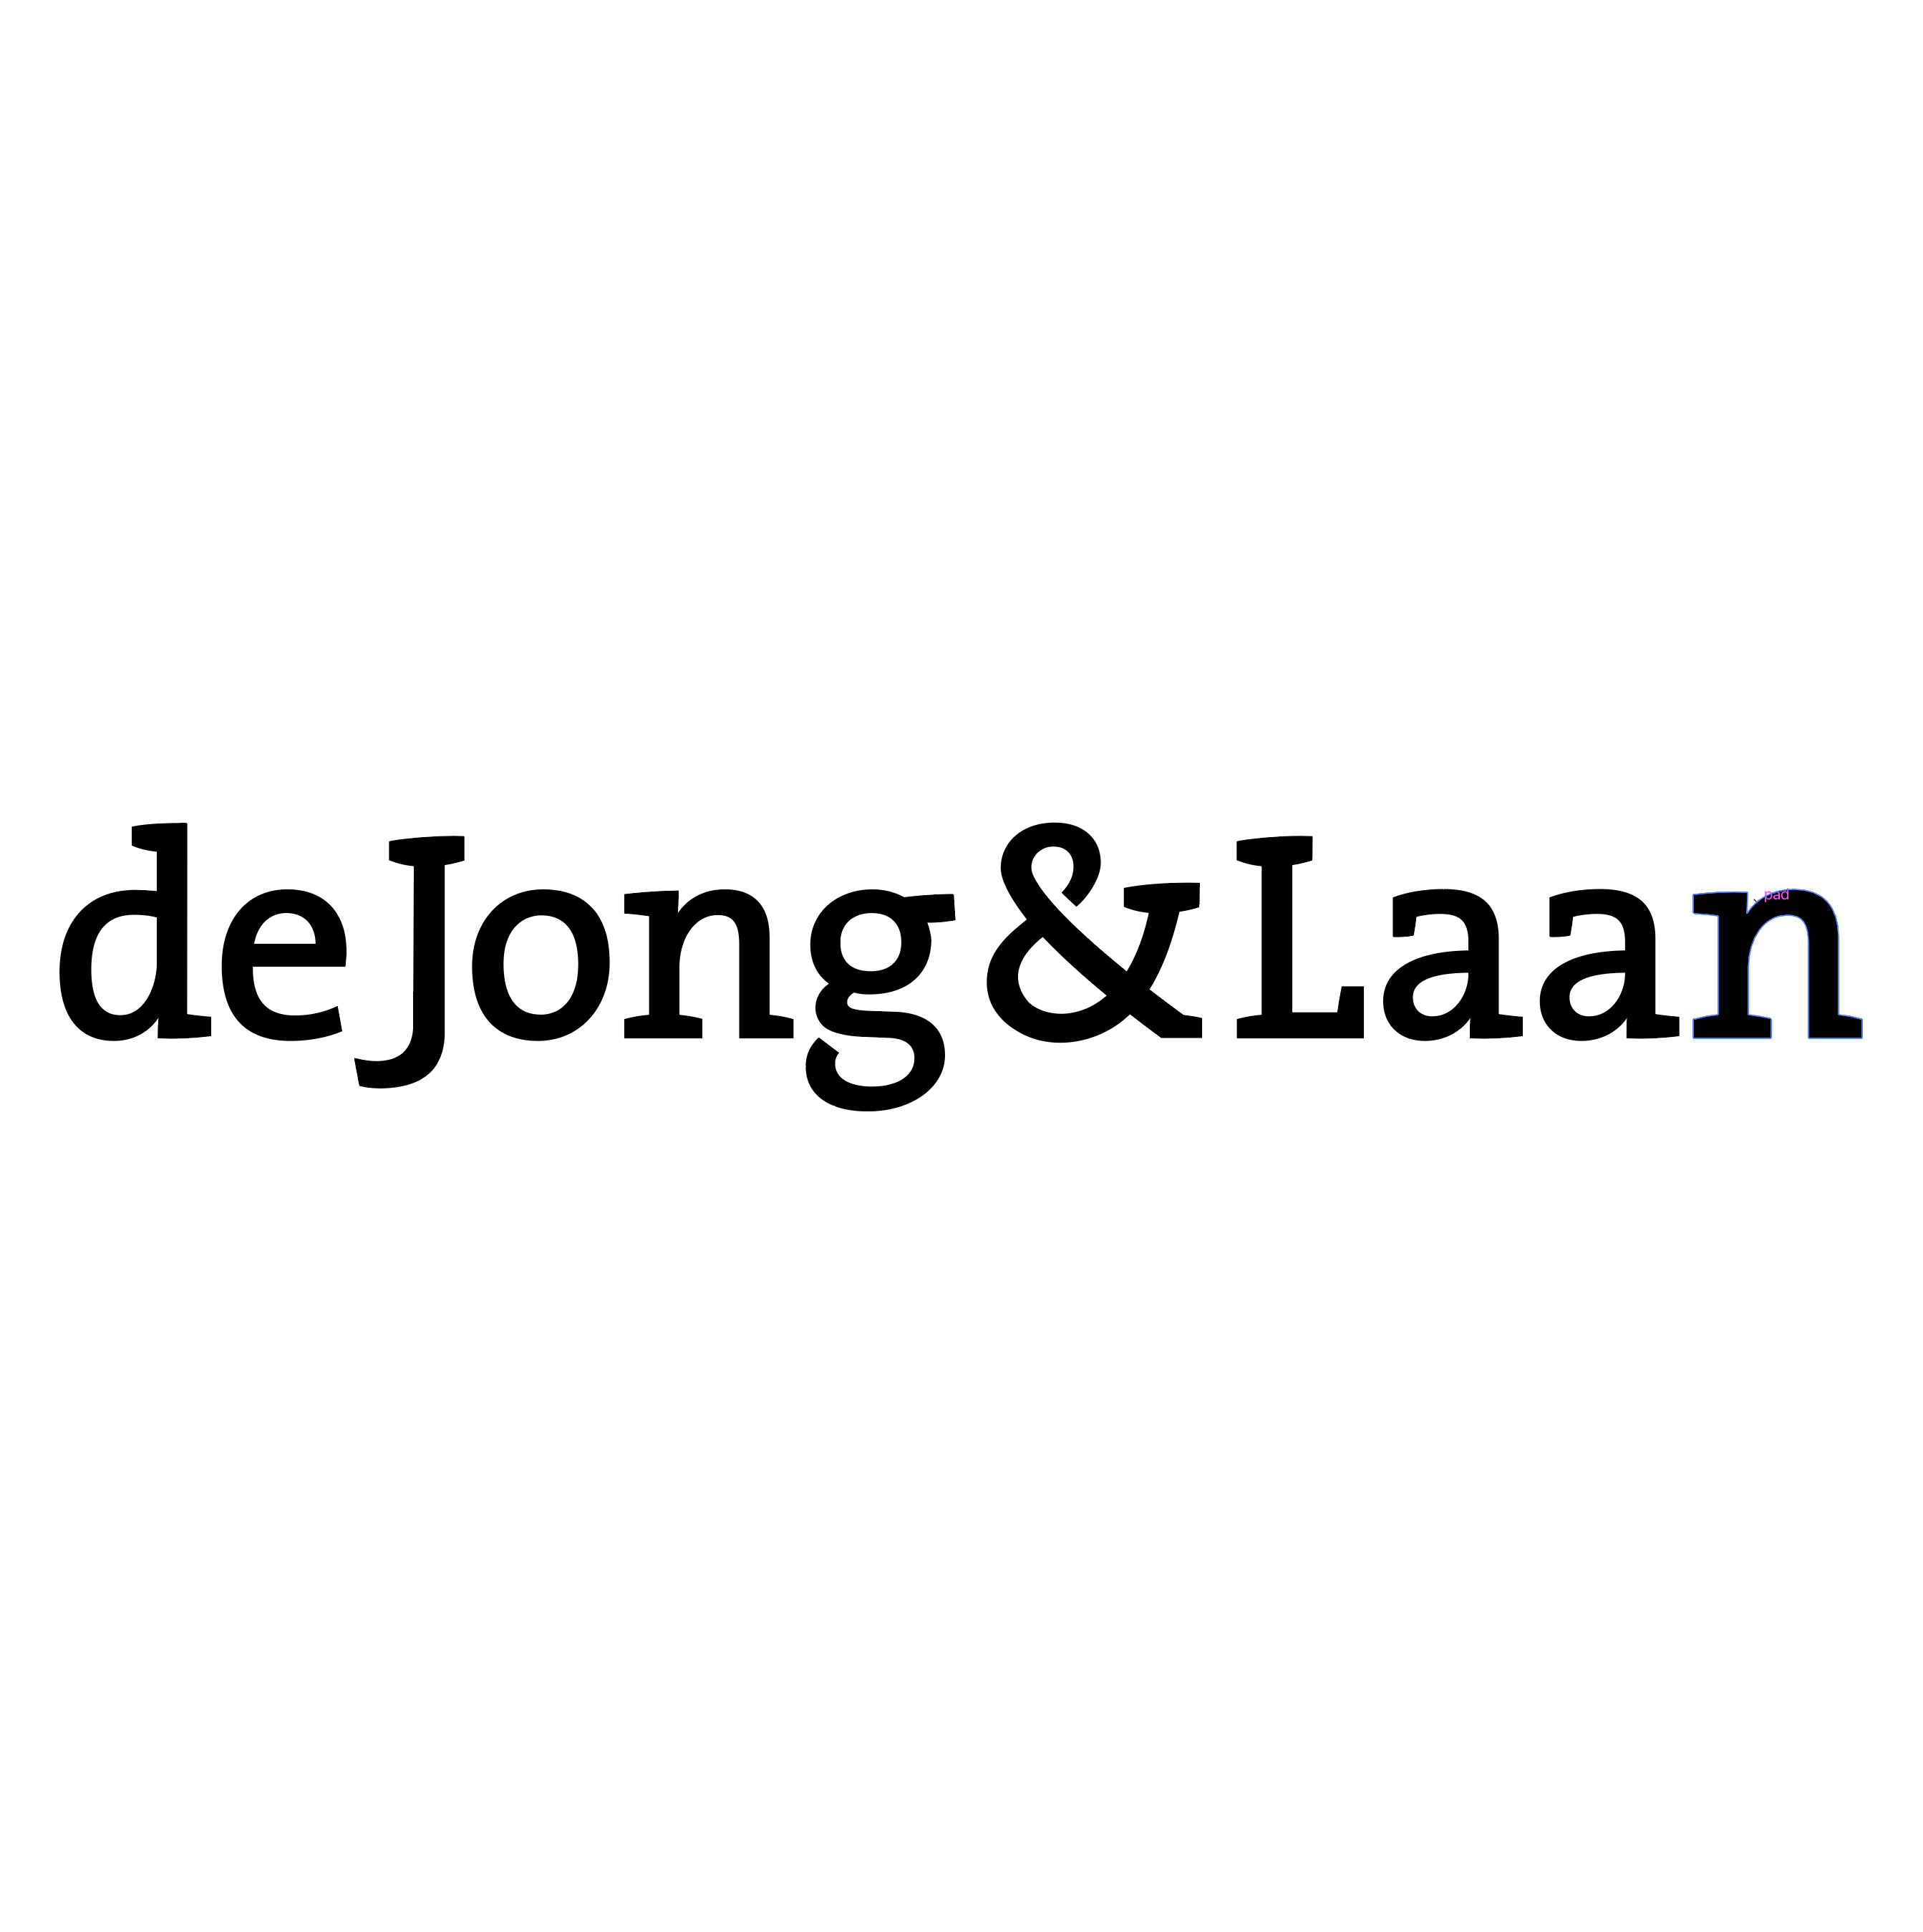 De Jong & Laan sponsor